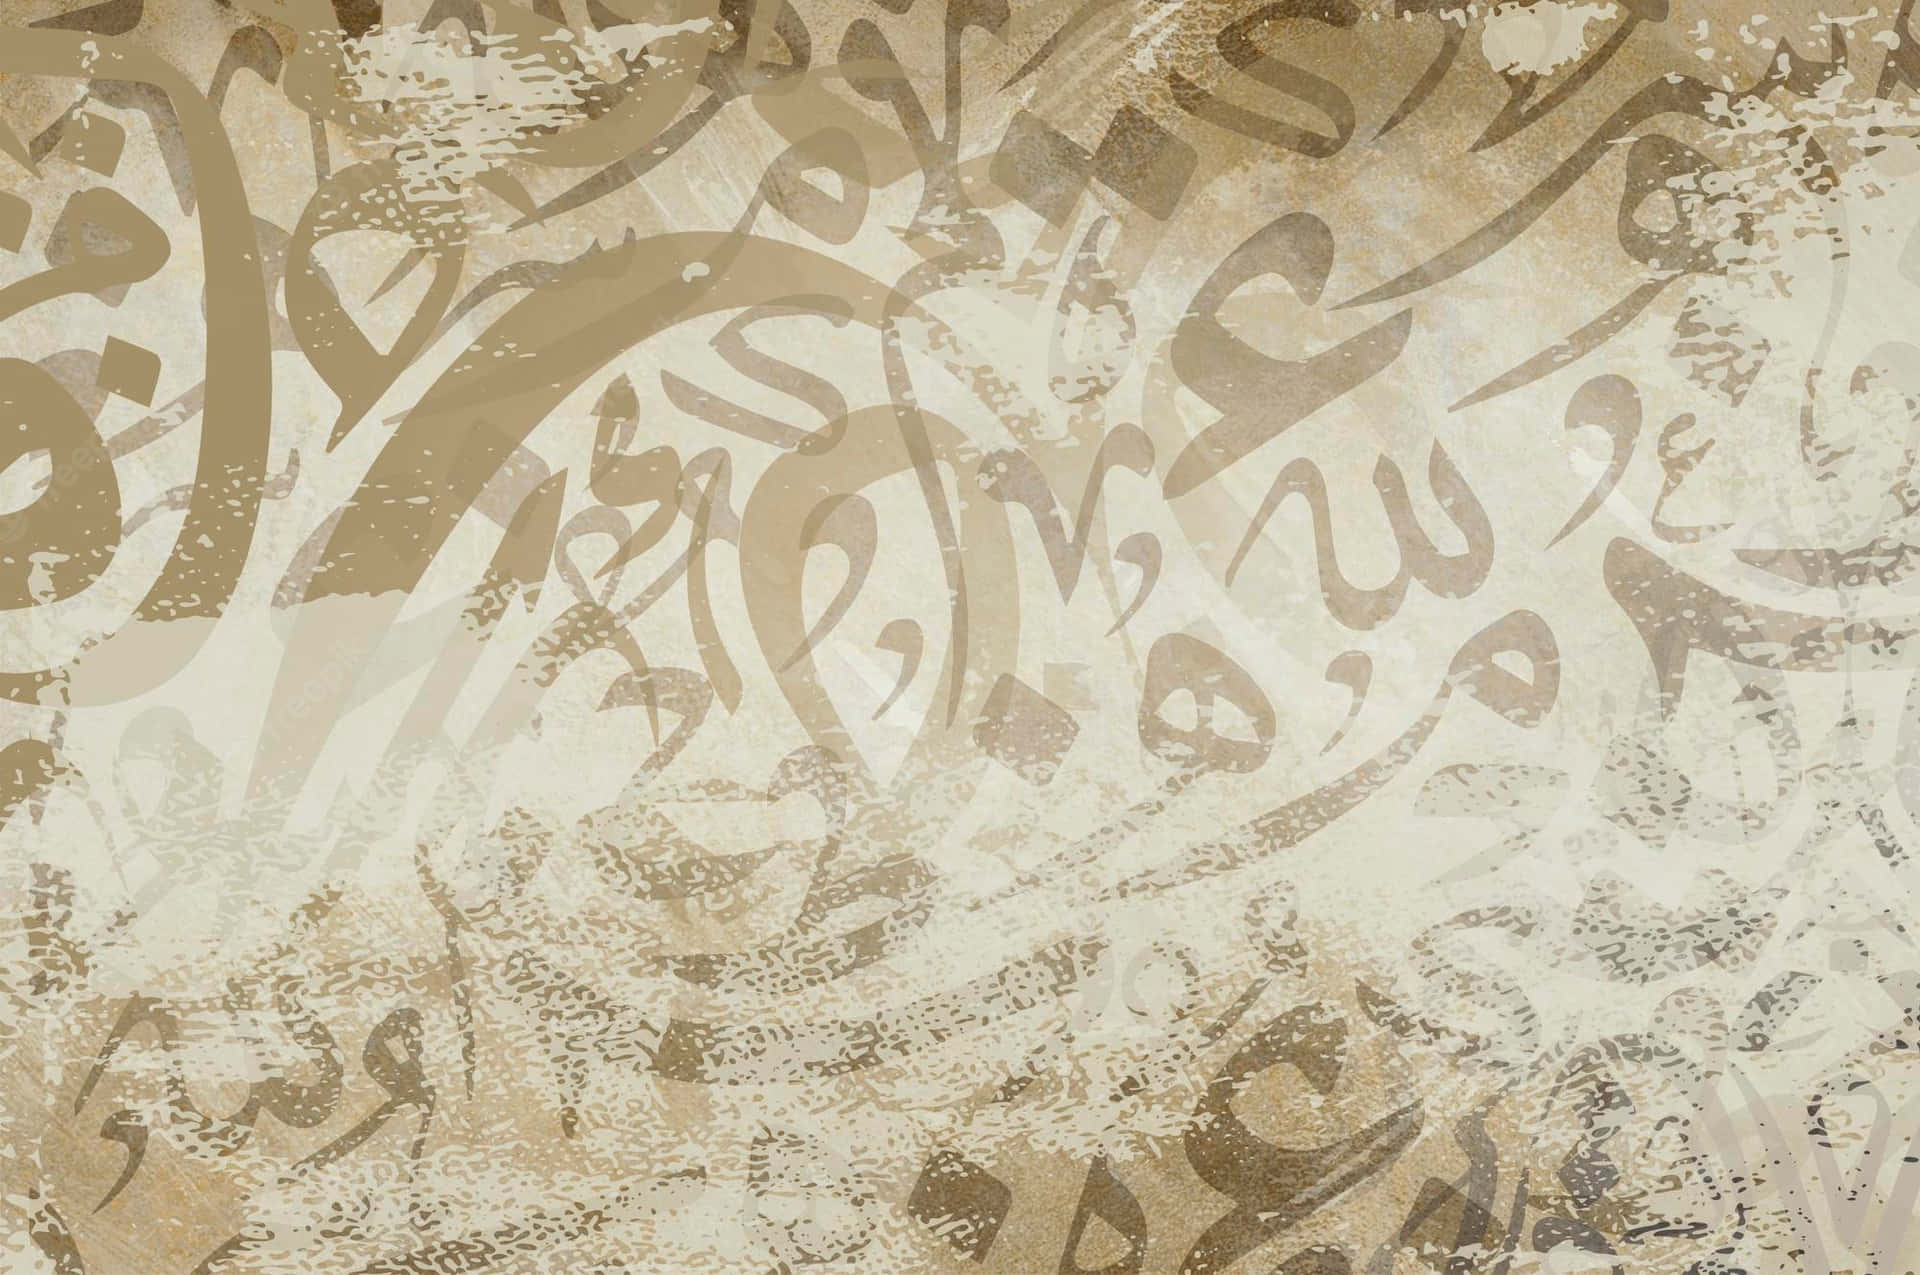 En tan og brun baggrund med arabisk kalligrafi Wallpaper